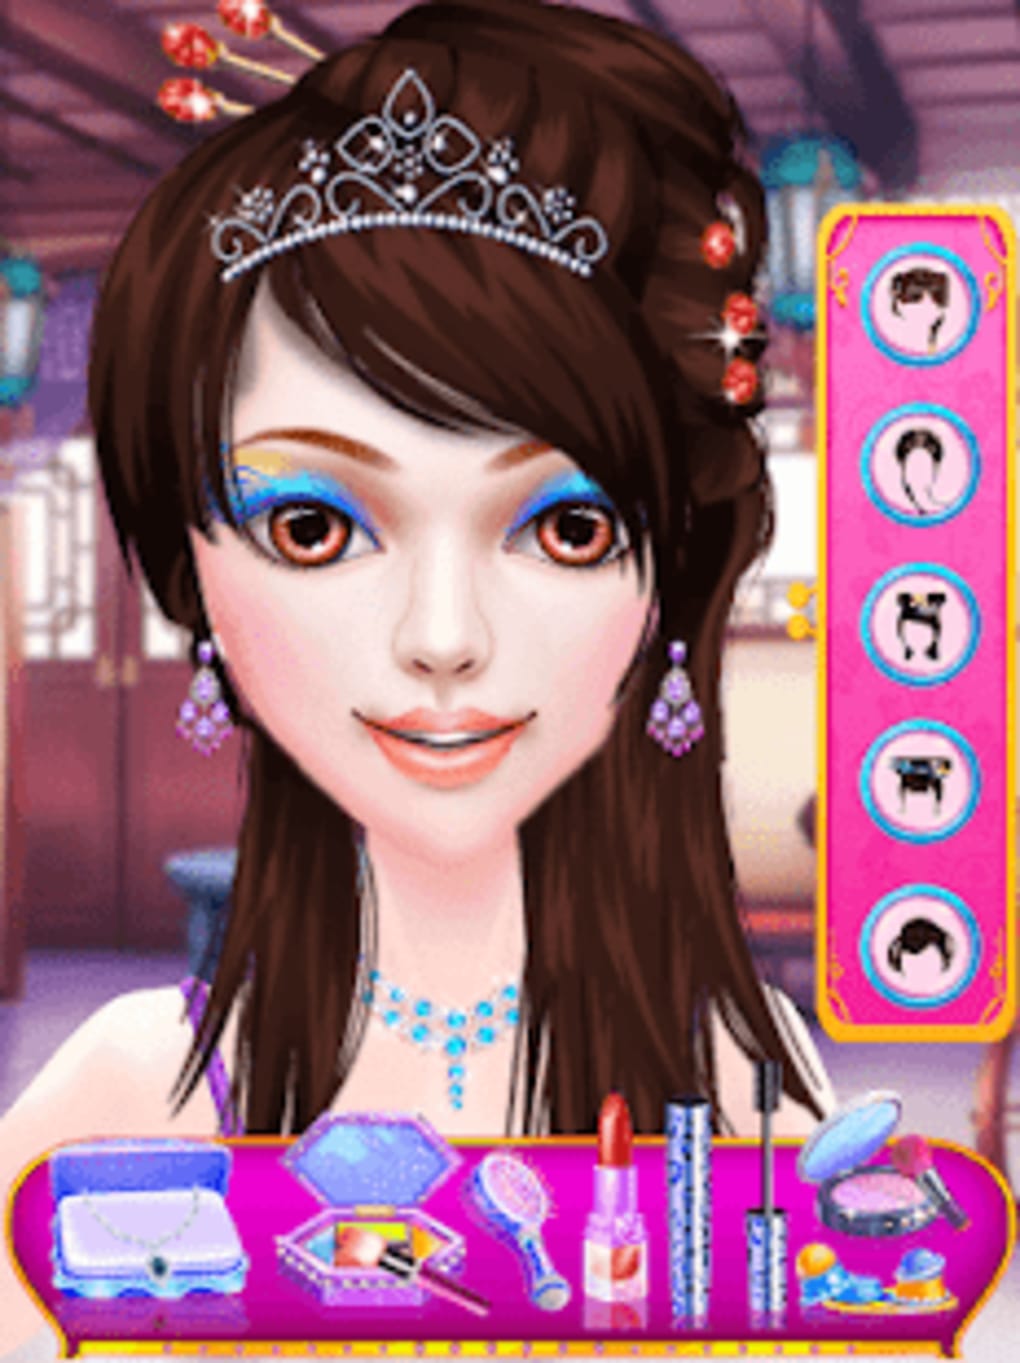 Boneca Princesa Jogo de Vestir versão móvel andróide iOS apk